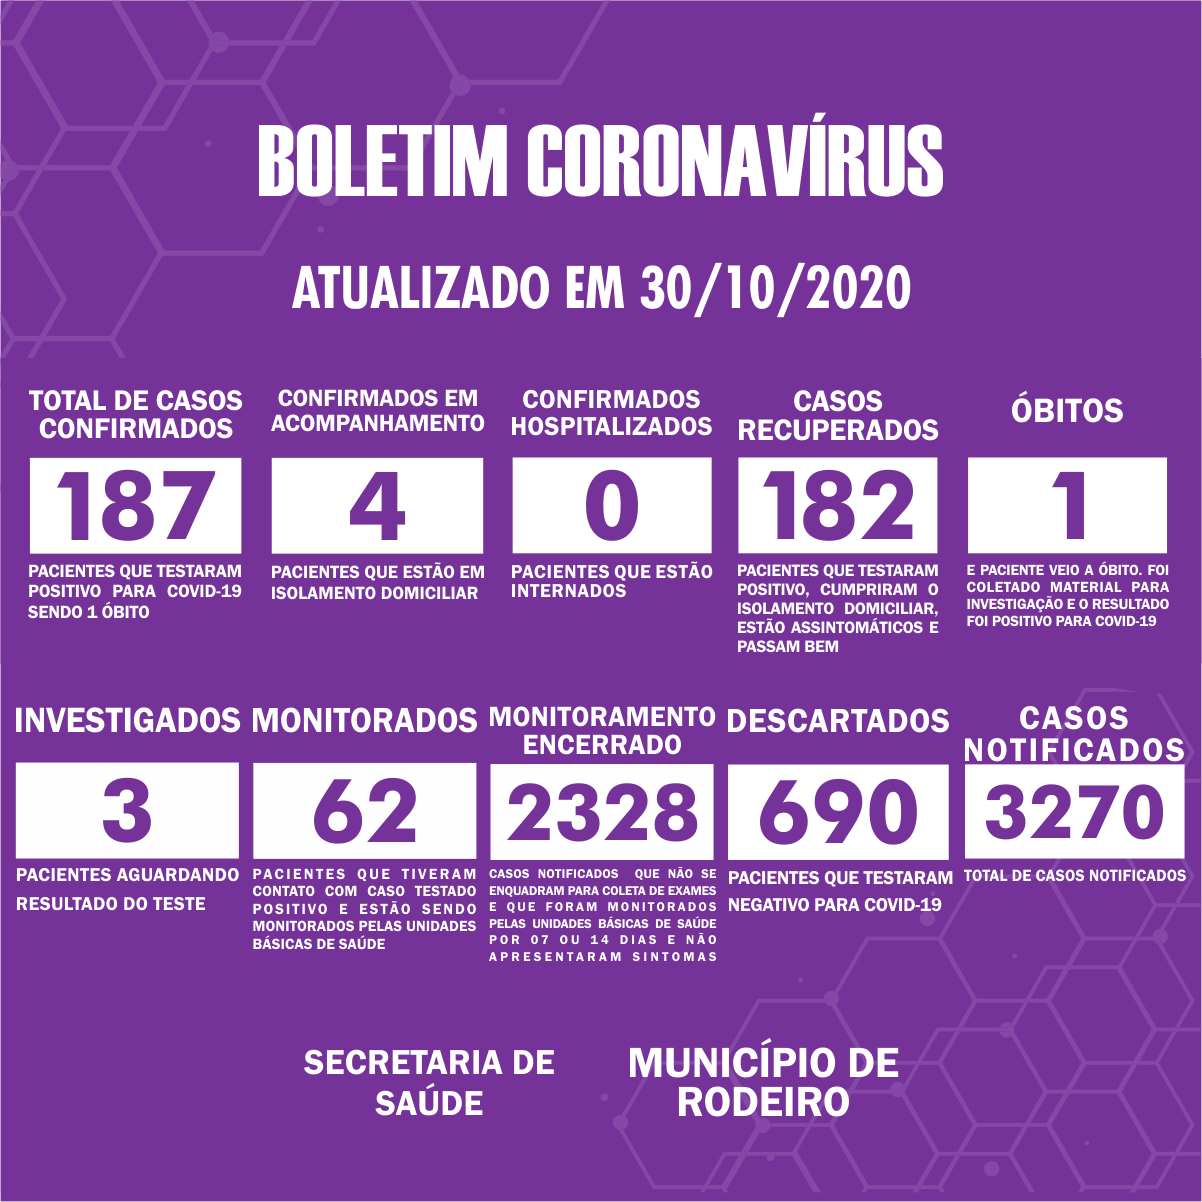 Boletim Epidemiológico do Município de Rodeiro sobre coronavírus, atualizado em 30/10/2020